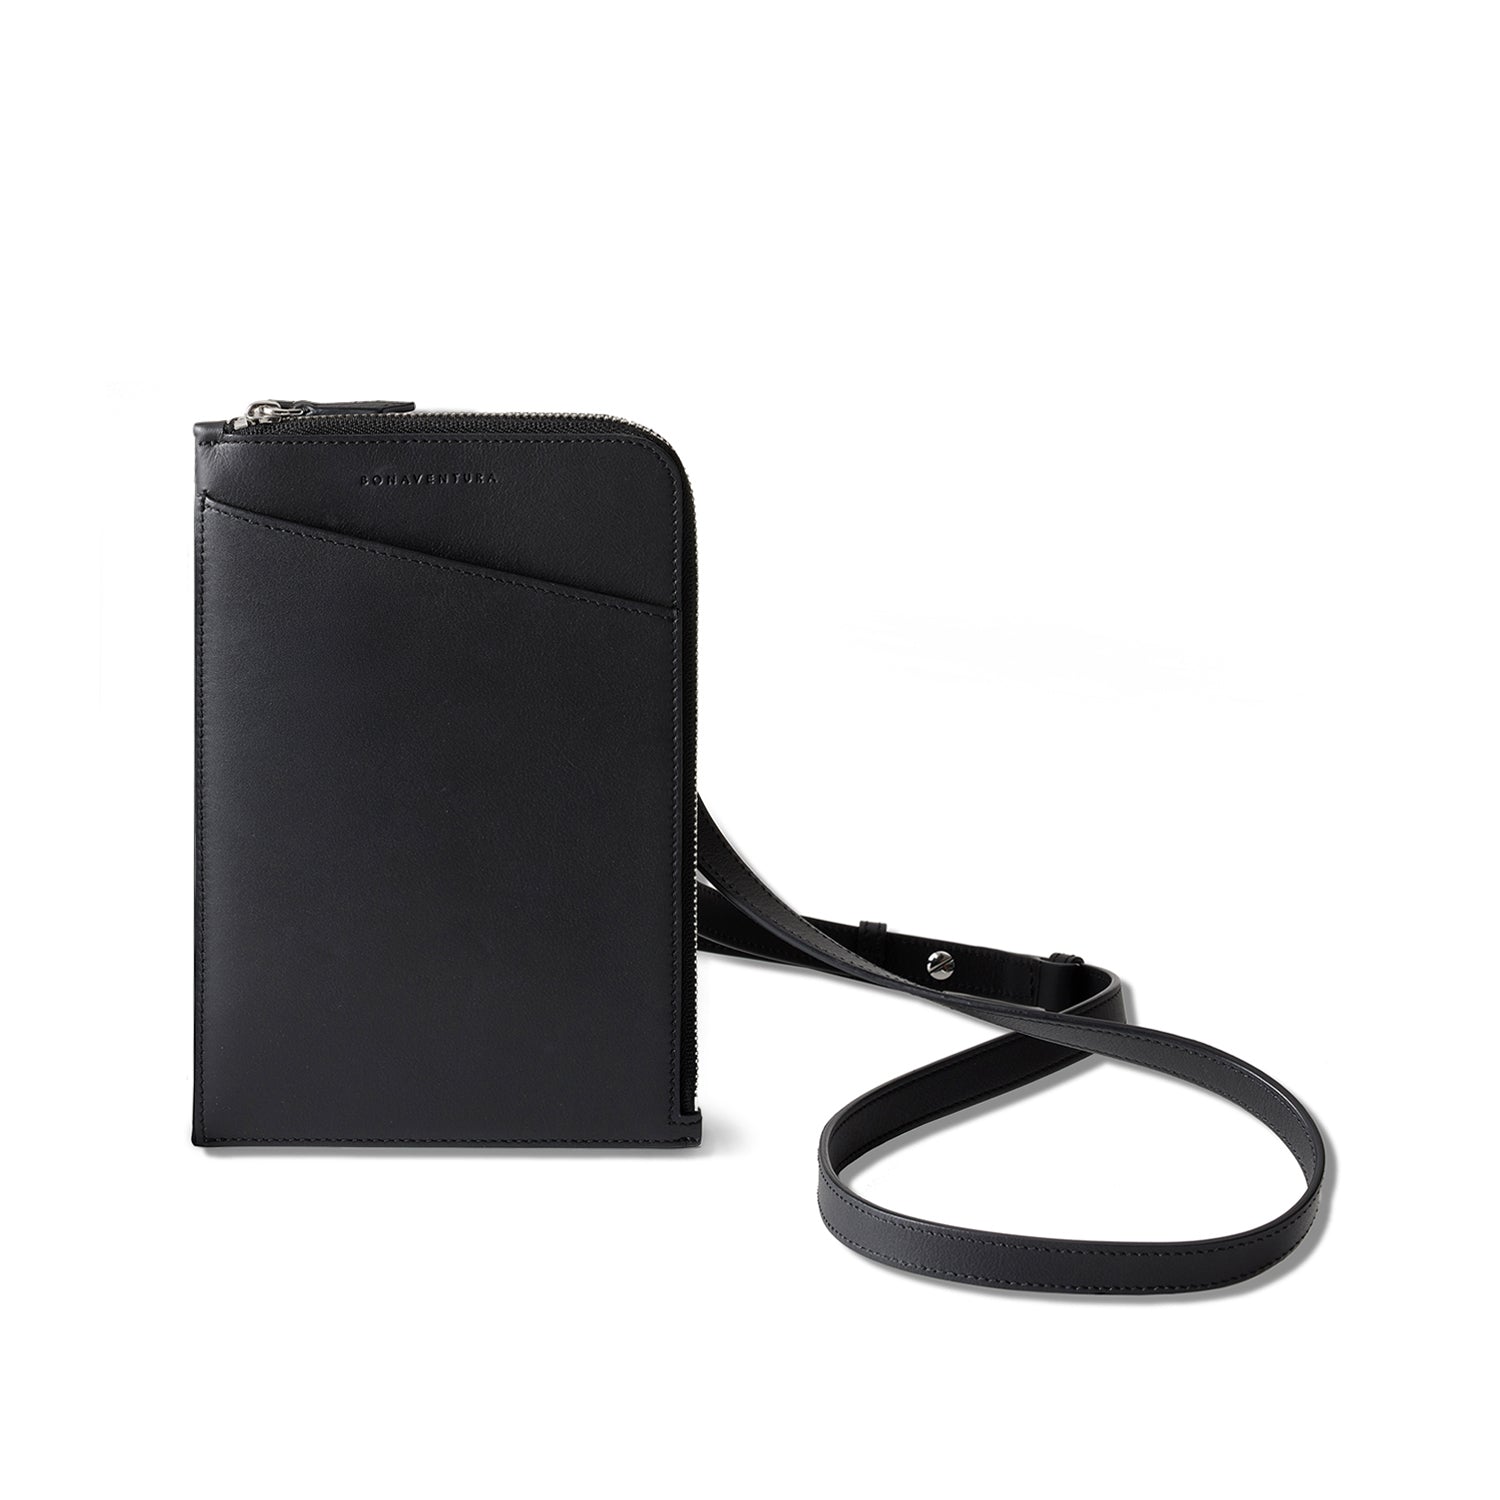 Riley shoulder bag in smooth leather, black